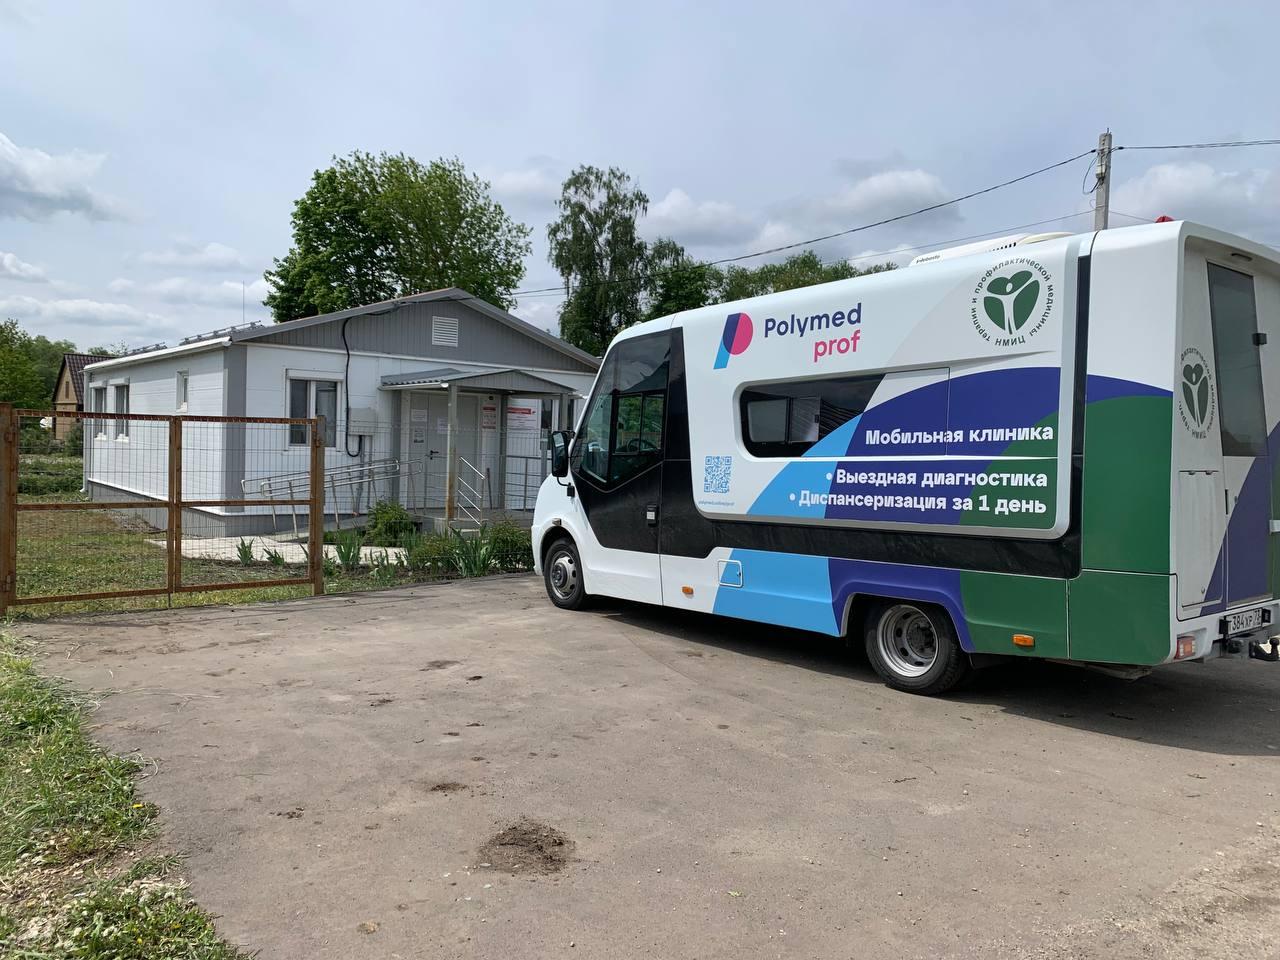 40 жителей села Кривцово-Плота в Орловской области прошли диспансеризацию, благодаря мобильной клинике